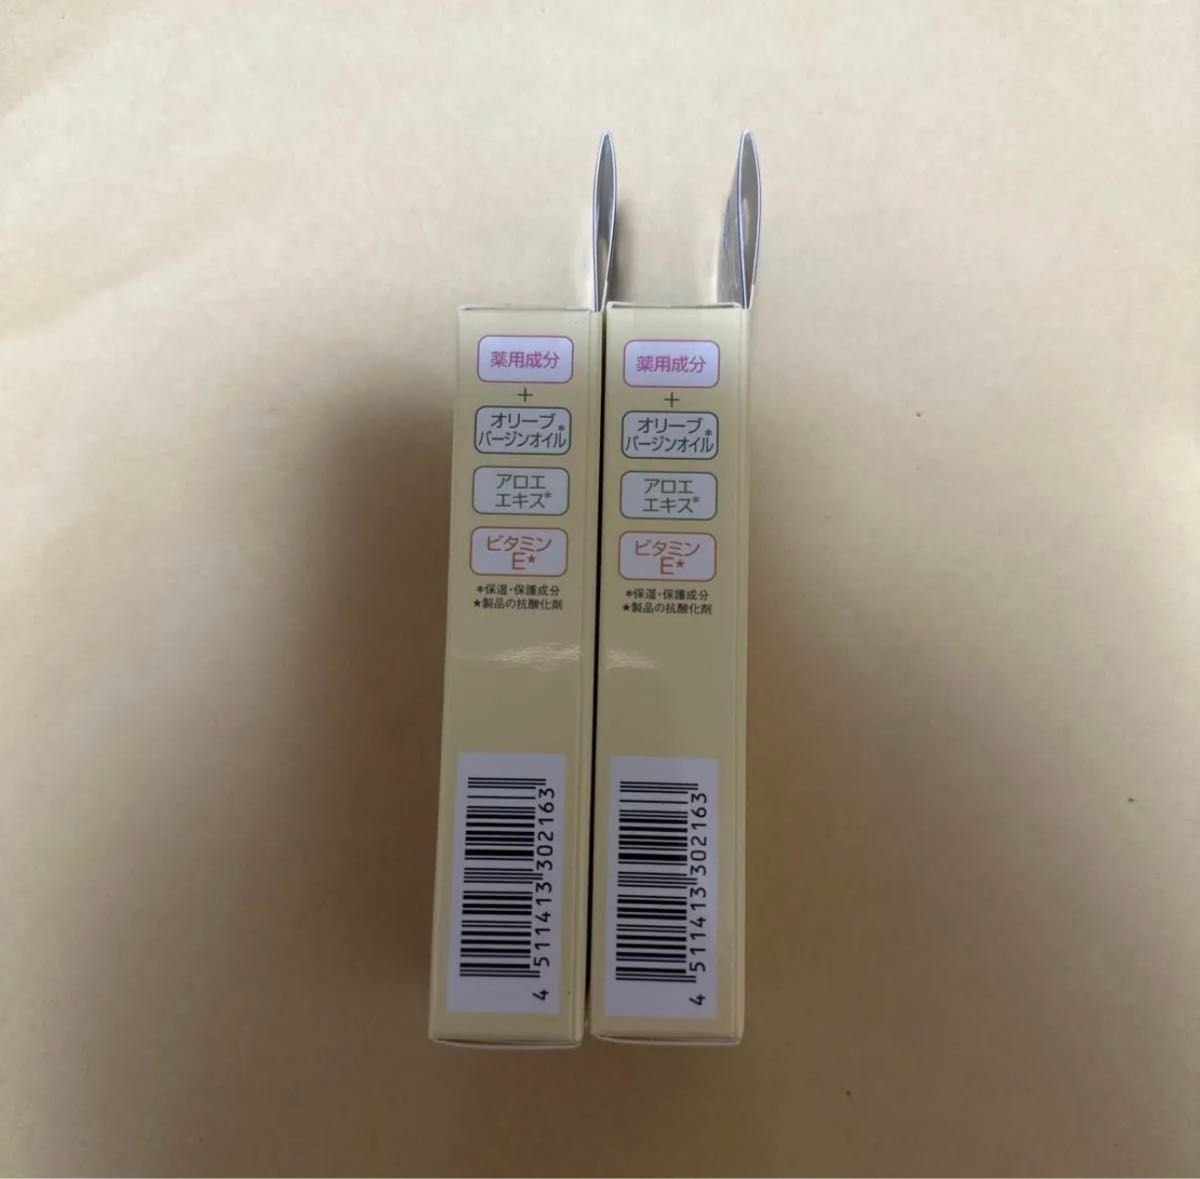 DHC 薬用リップクリーム 1.5g（医薬部外品）2個セット